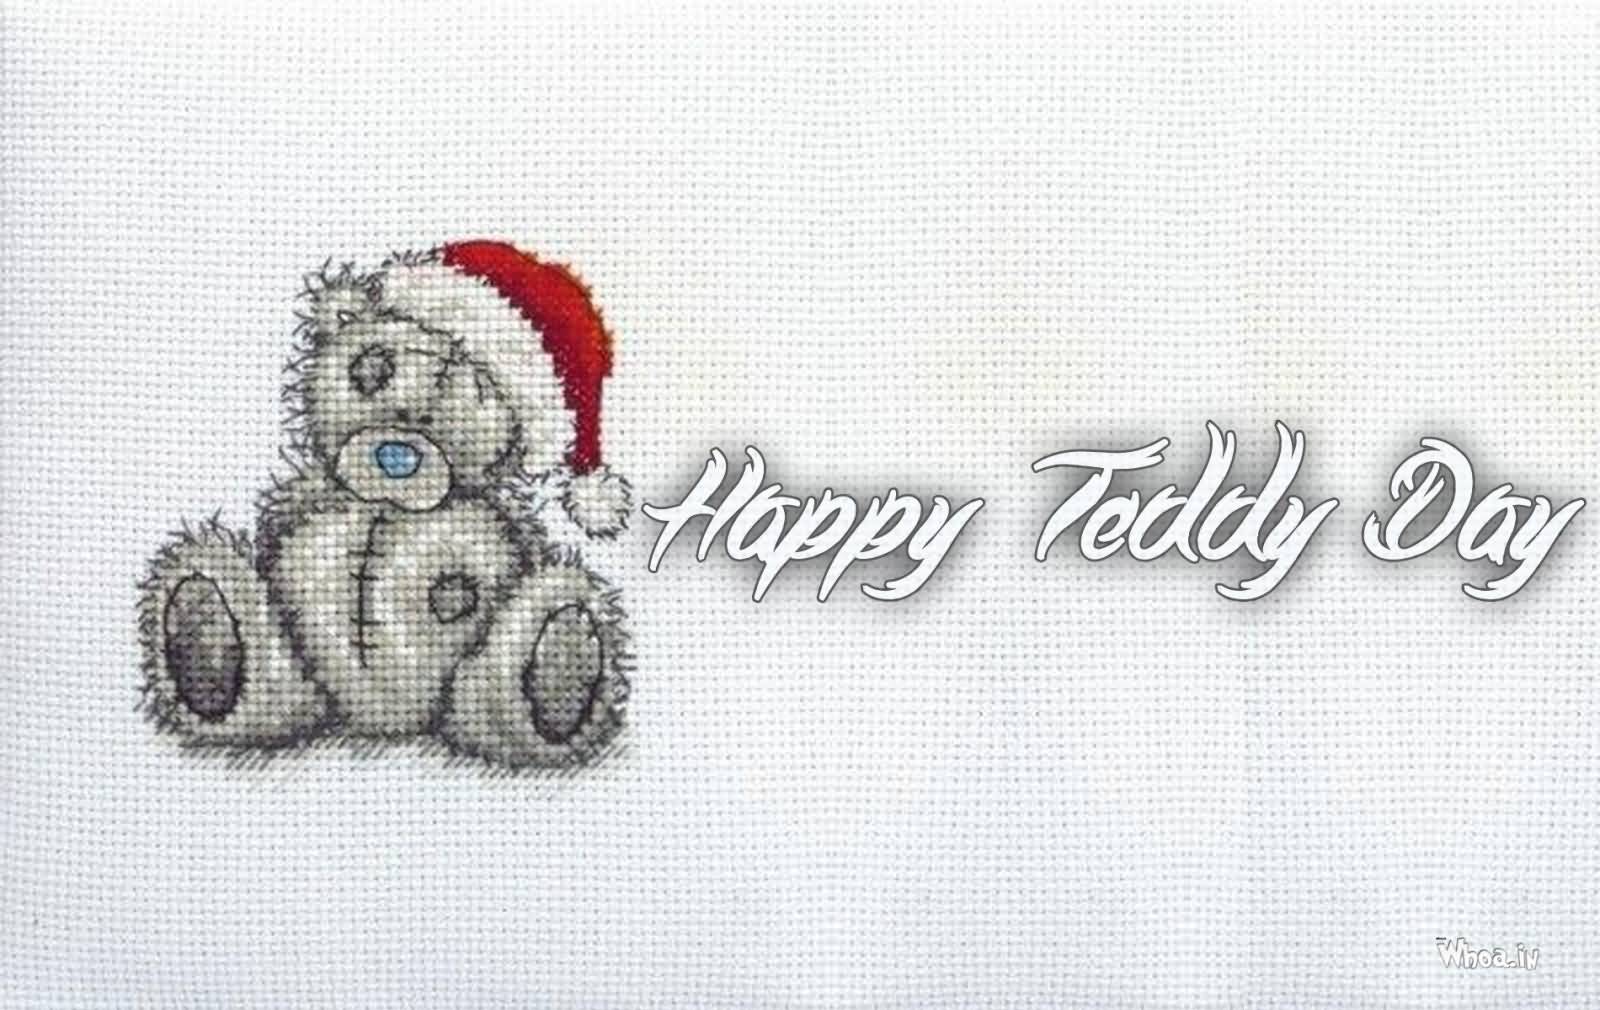 Happy Teddy Day Tatty Teddy With Santa Claus Cap Greeting Card